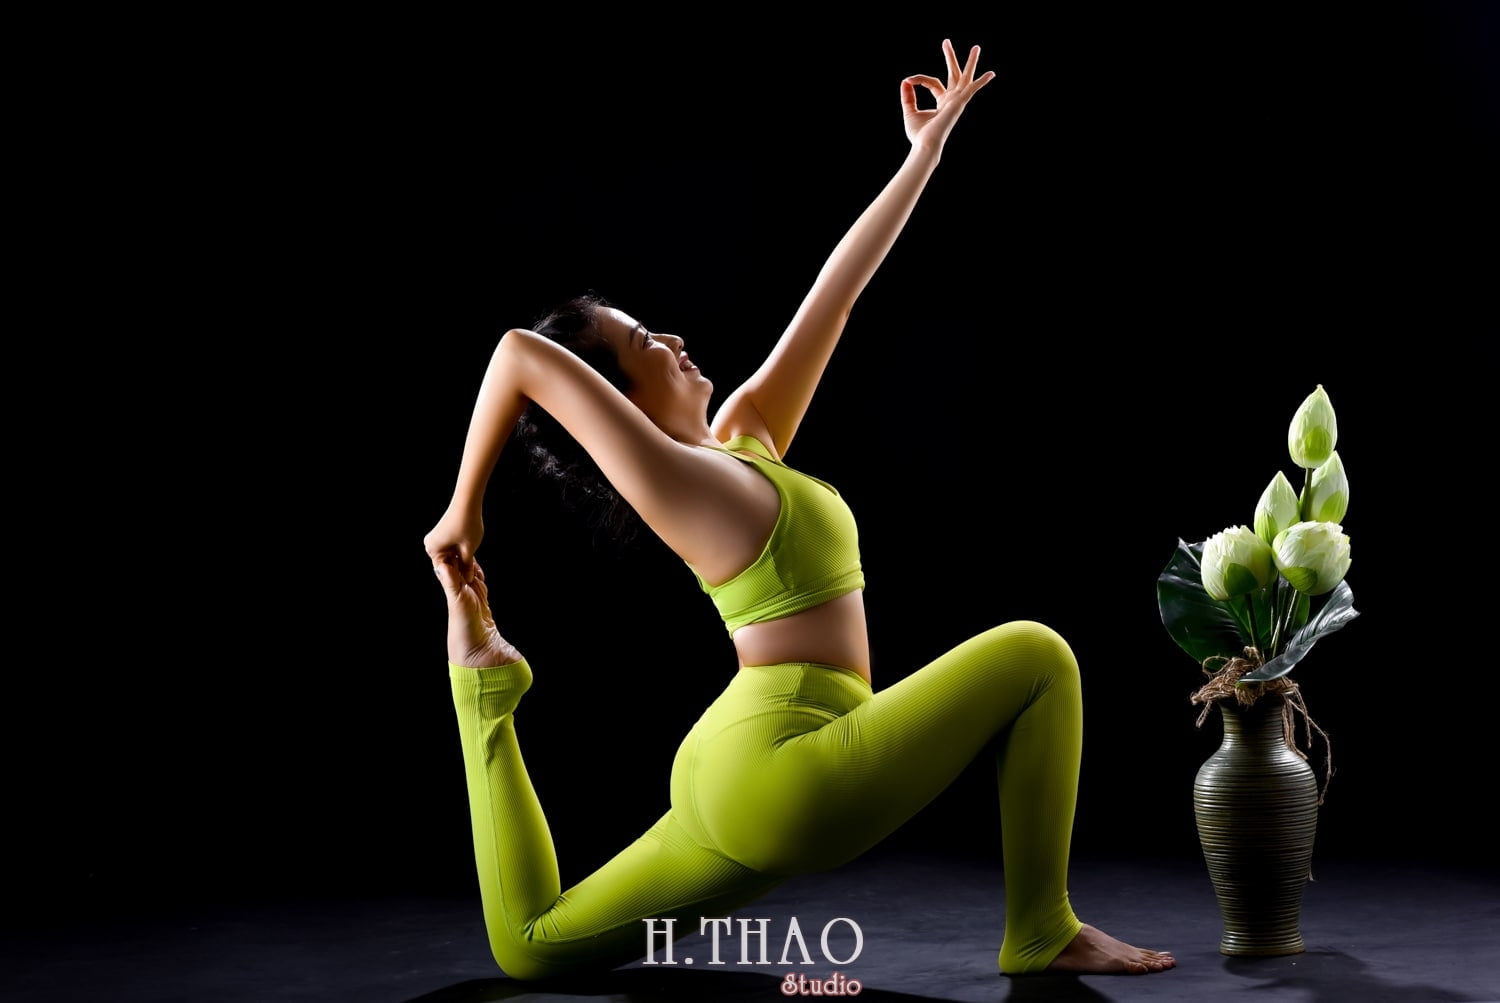 Anh yoga 18 min - Bộ ảnh Yoga chụp trong studio tuyệt đẹp – HThao Studio